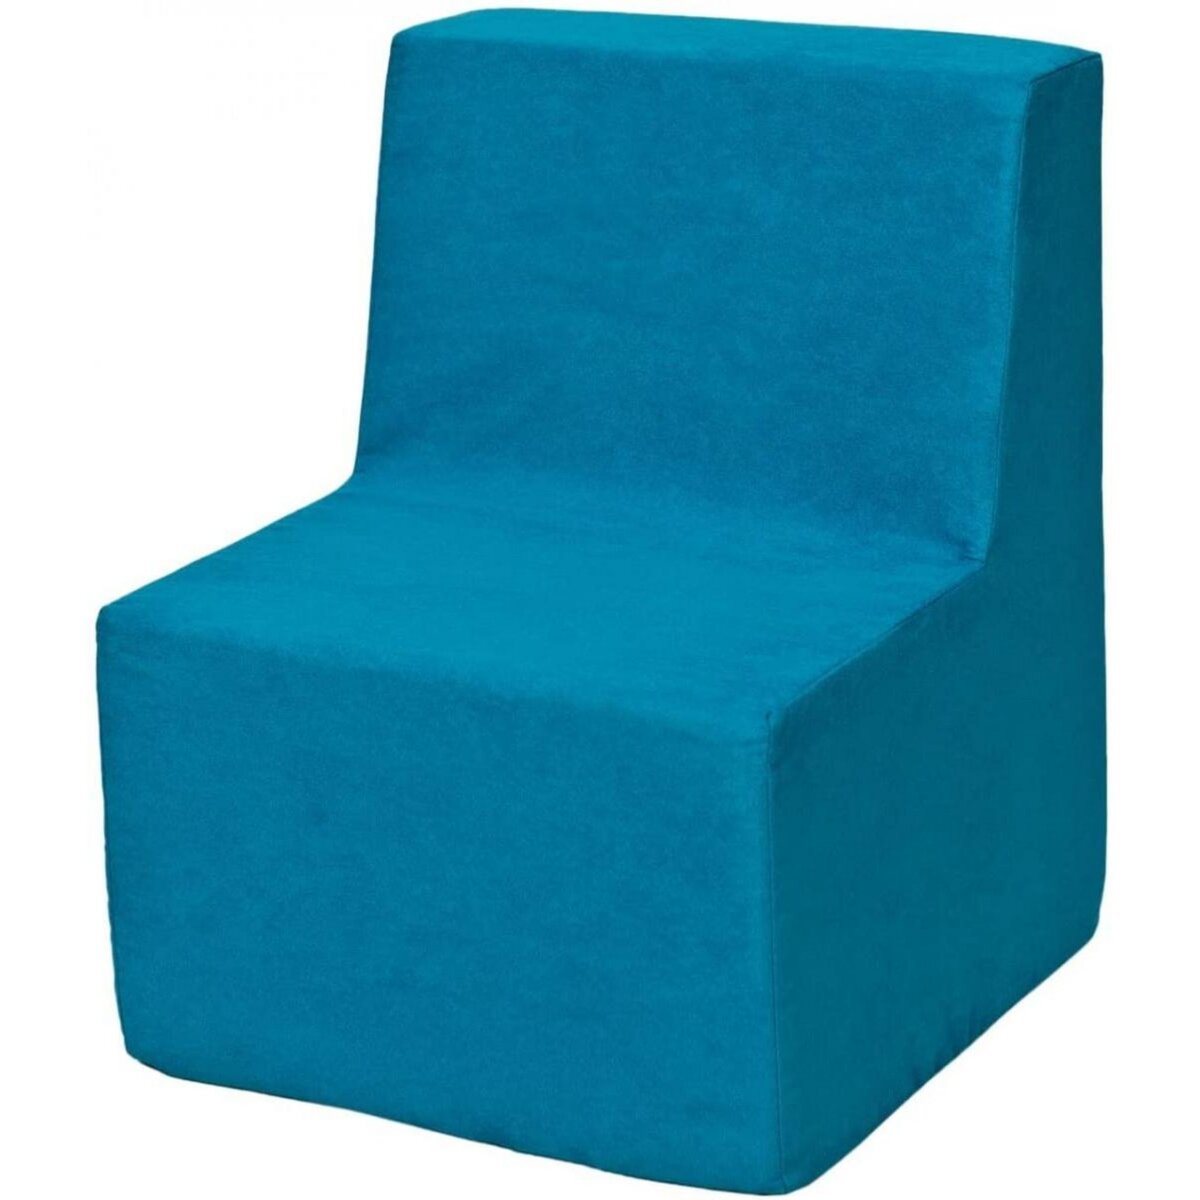  Chaise fauteuil pouf pour chambre d'enfant bleu